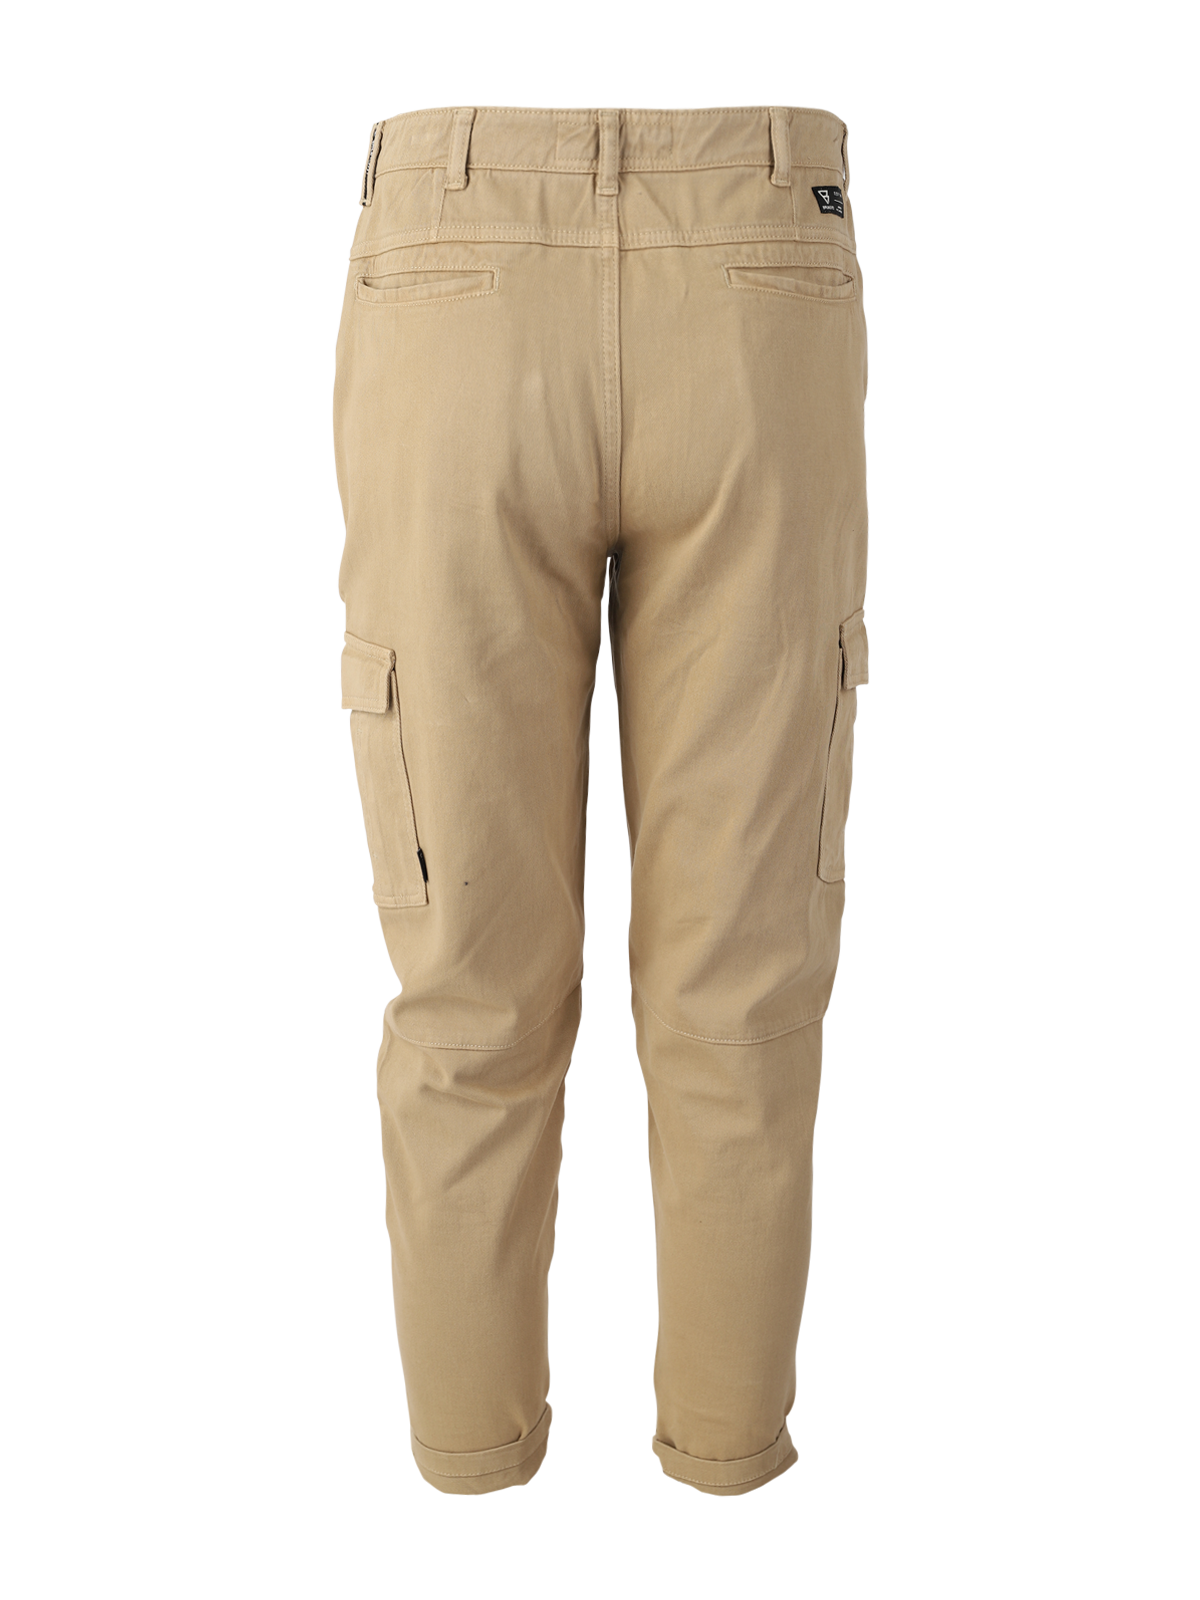 Nalar-R Cargo Pants | Brown